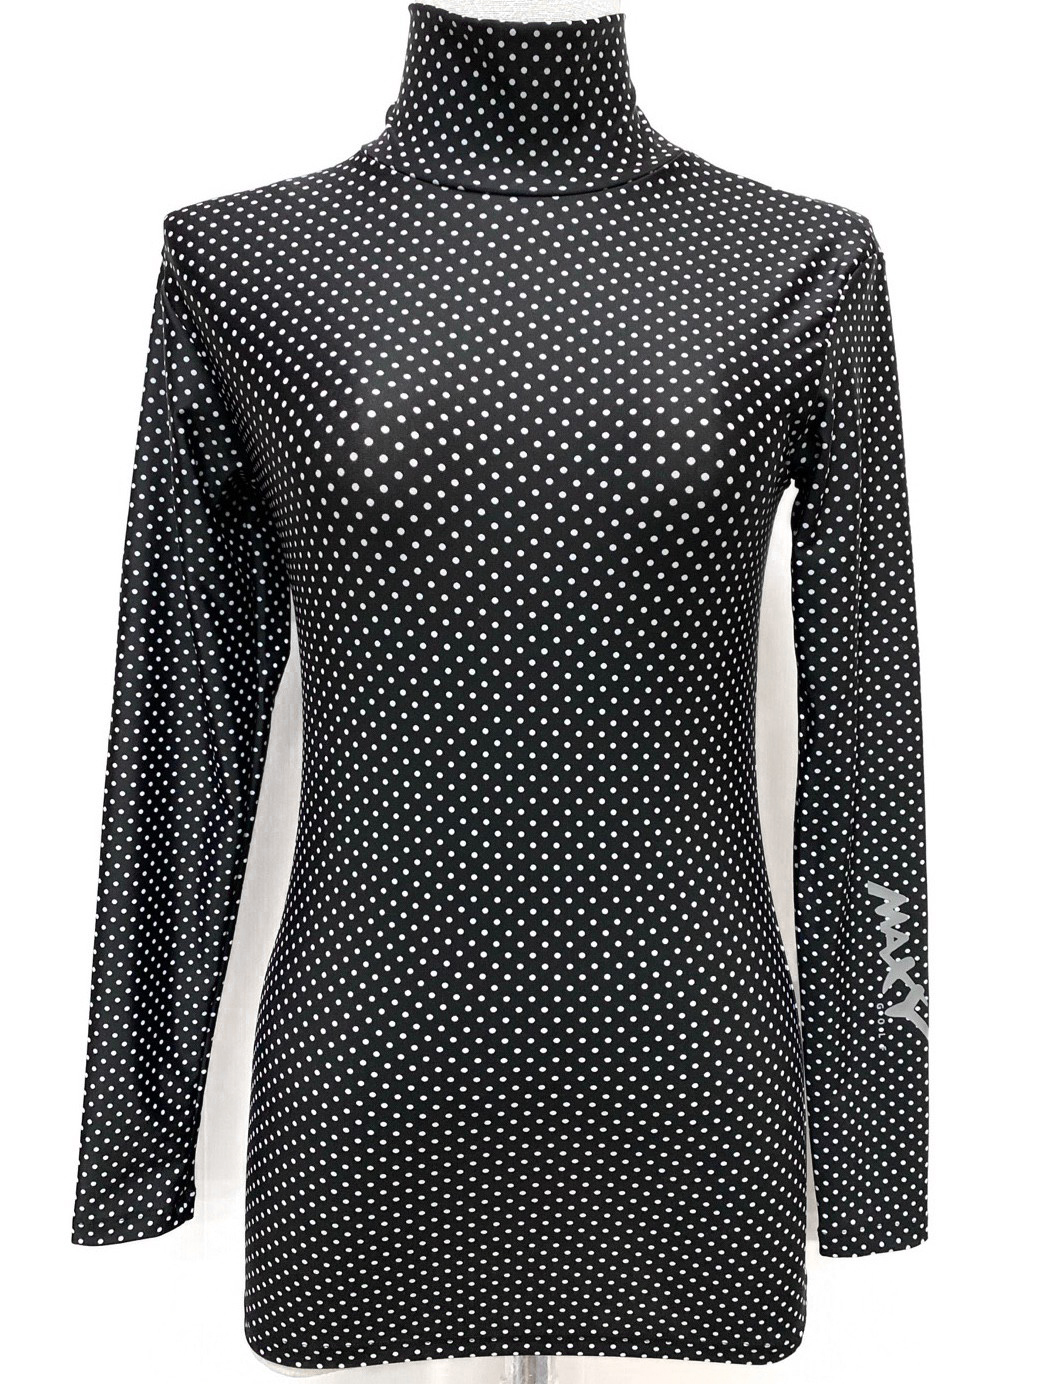 เสื้อบอดี้ฟิตกันแดด(คอเต่า)สำหรับผู้หญิง ยี่ห้อ MAXY GOLF (รหัส D-0070 ลายดำจุดขาวเล็ก)